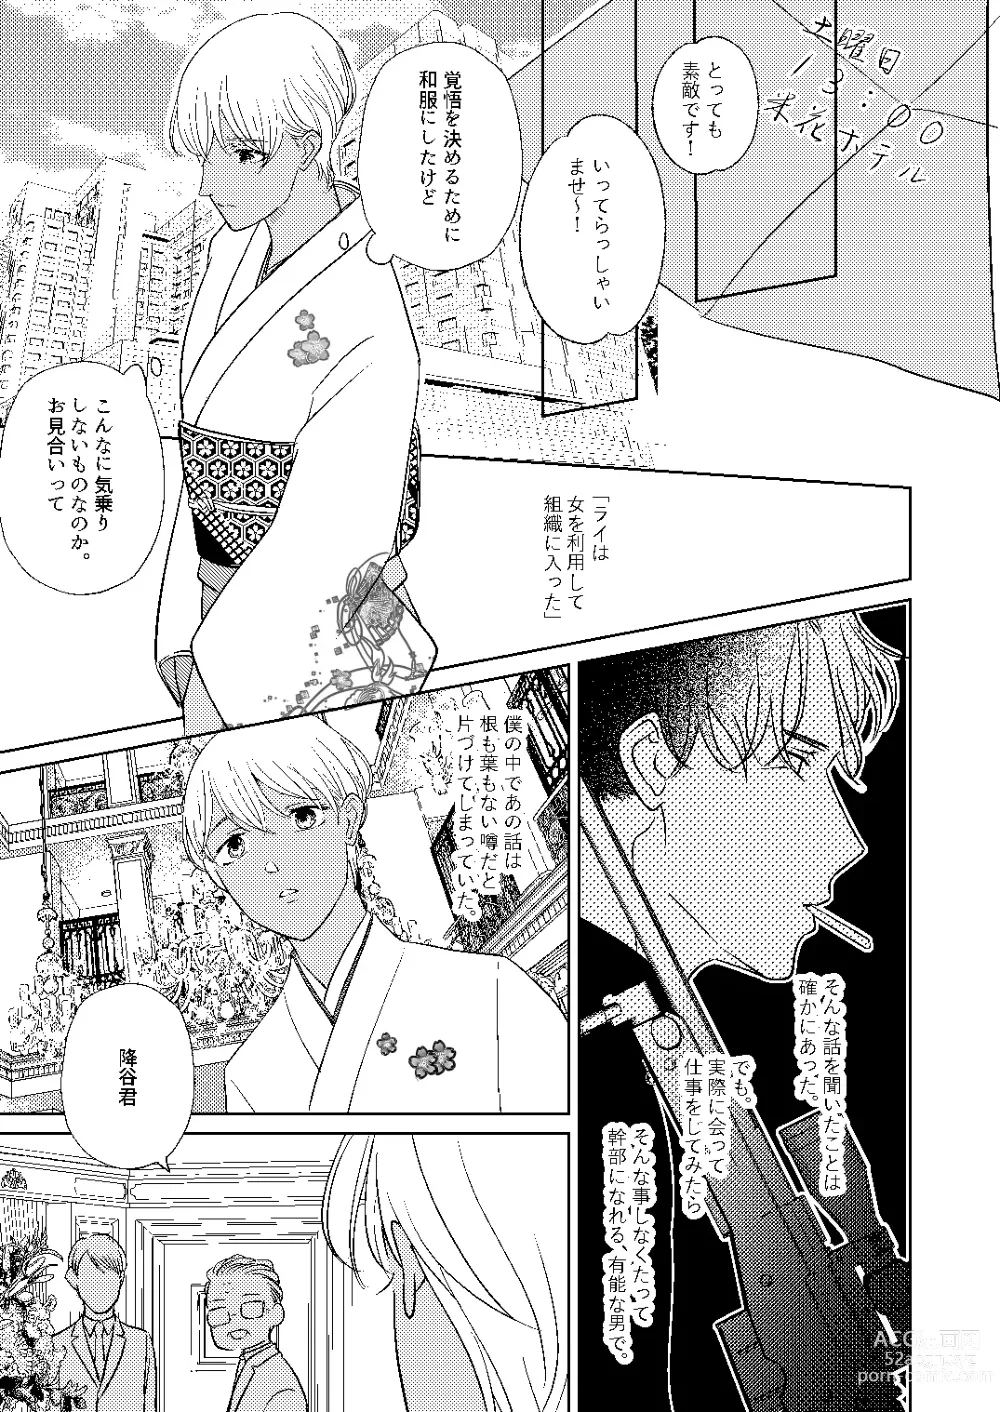 Page 80 of doujinshi Akayasu Jotaika WEB Sairoku